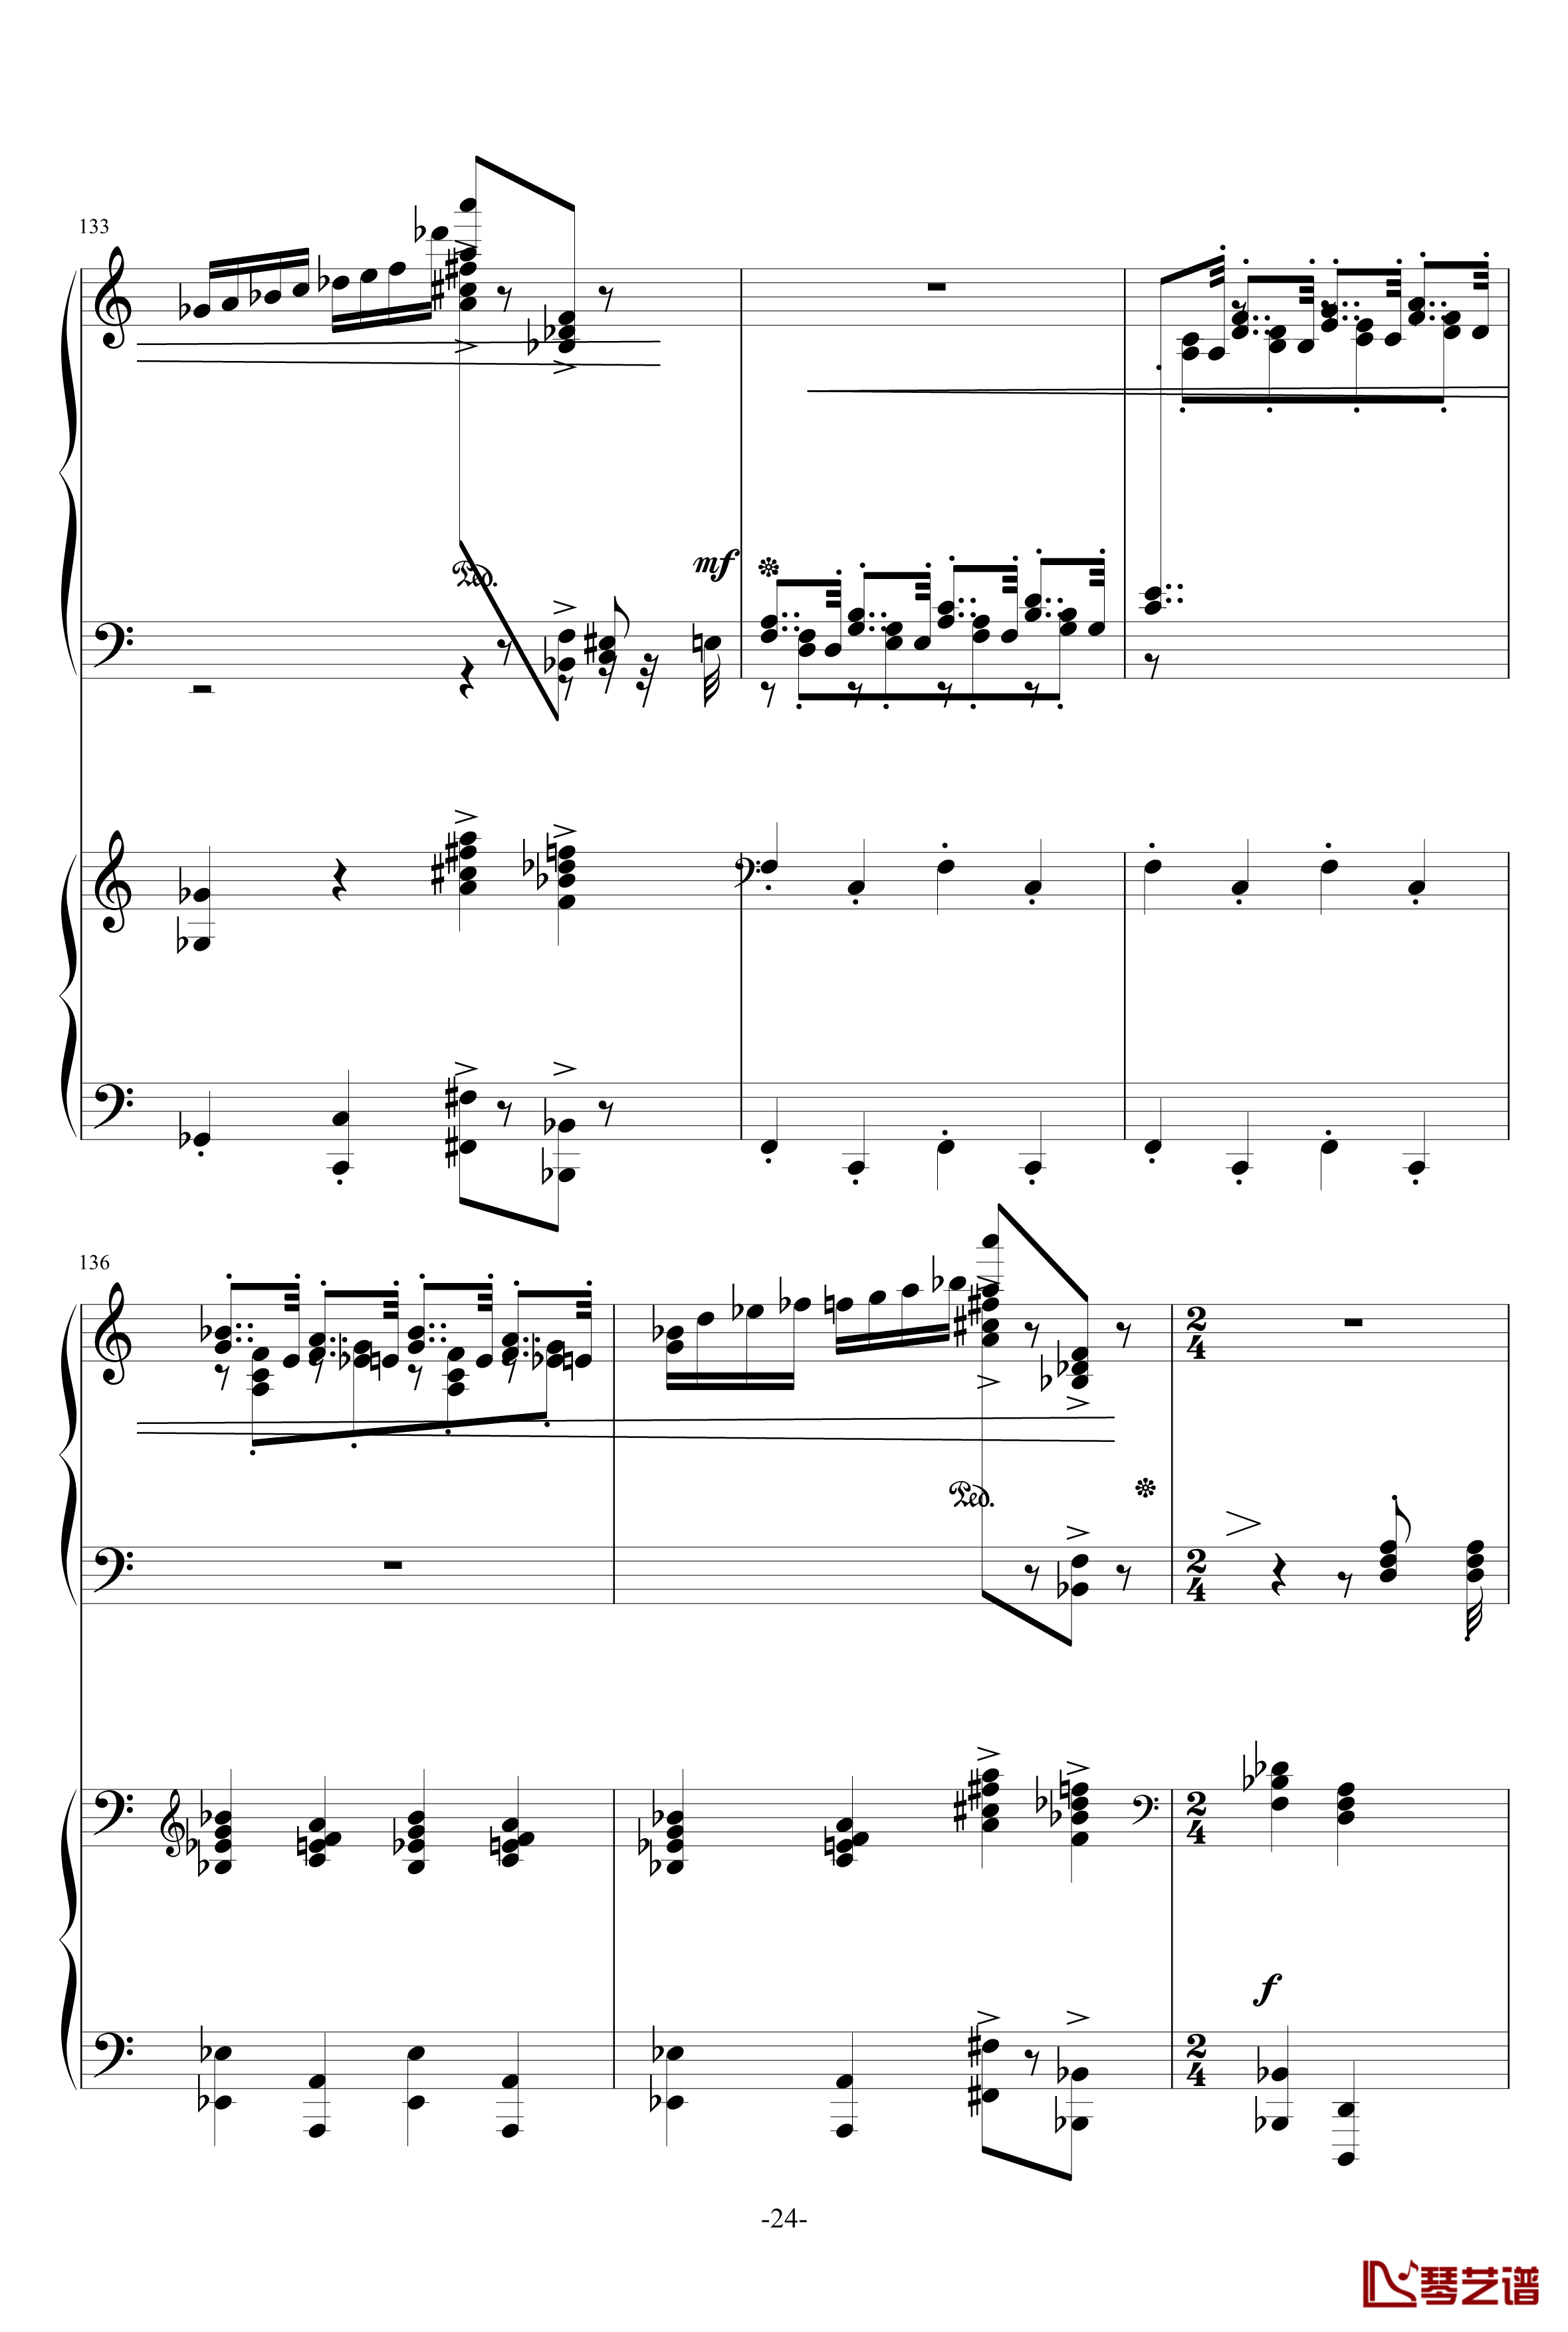 普罗科菲耶夫第三钢琴协奏曲第二乐章钢琴谱24